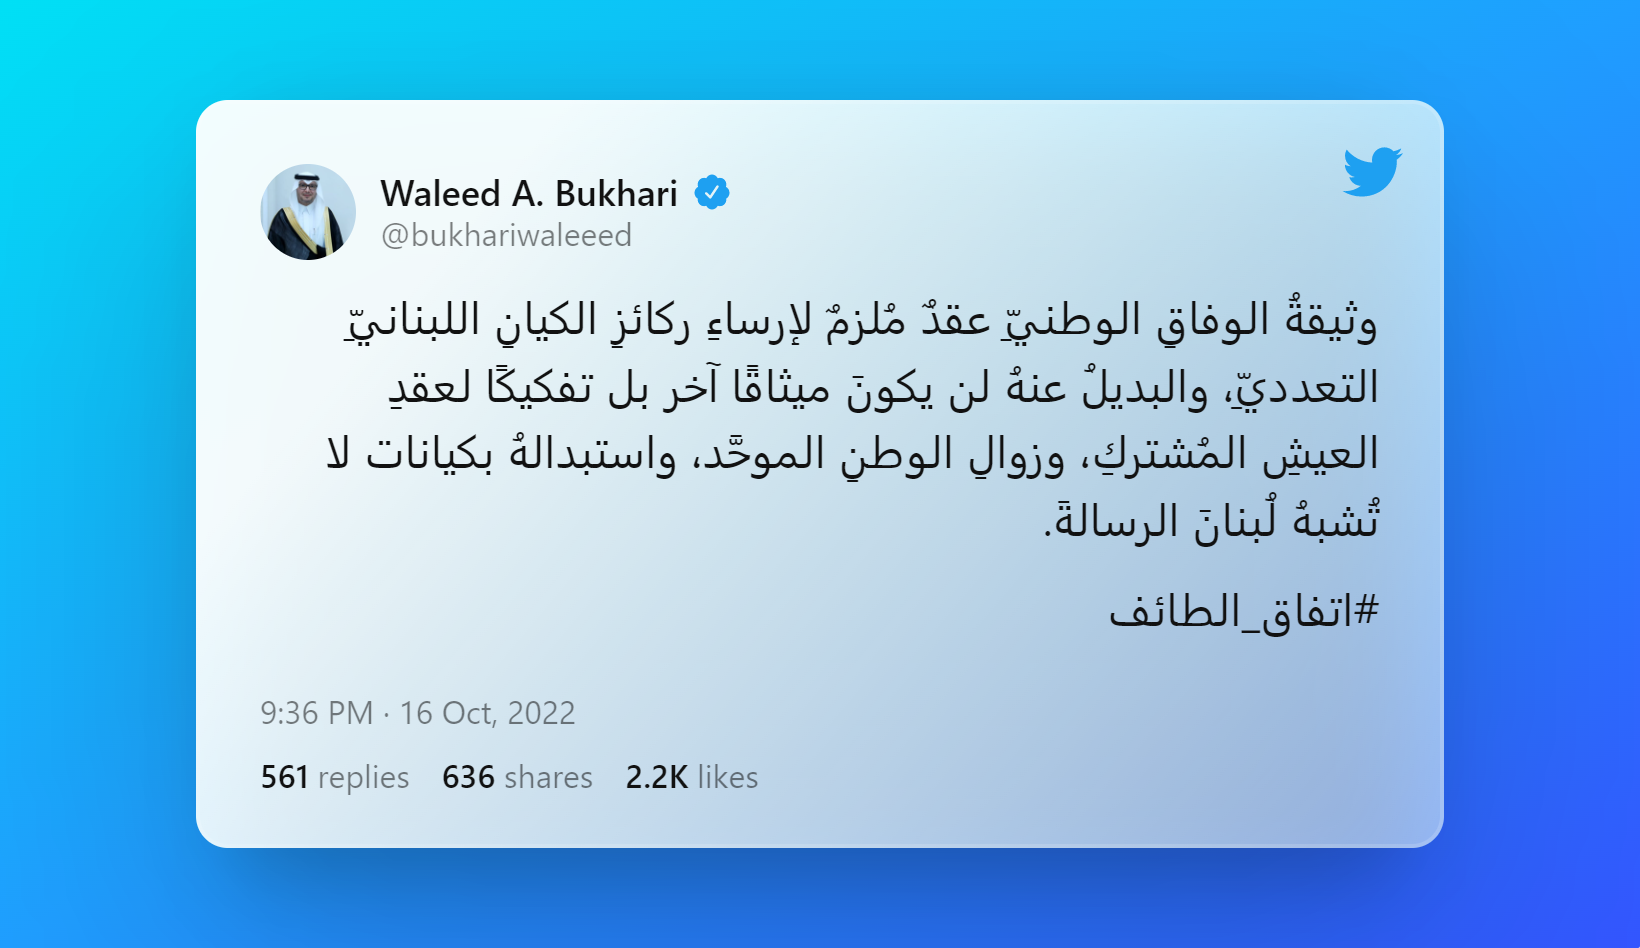 Tweet by Waleed A. Bukhari